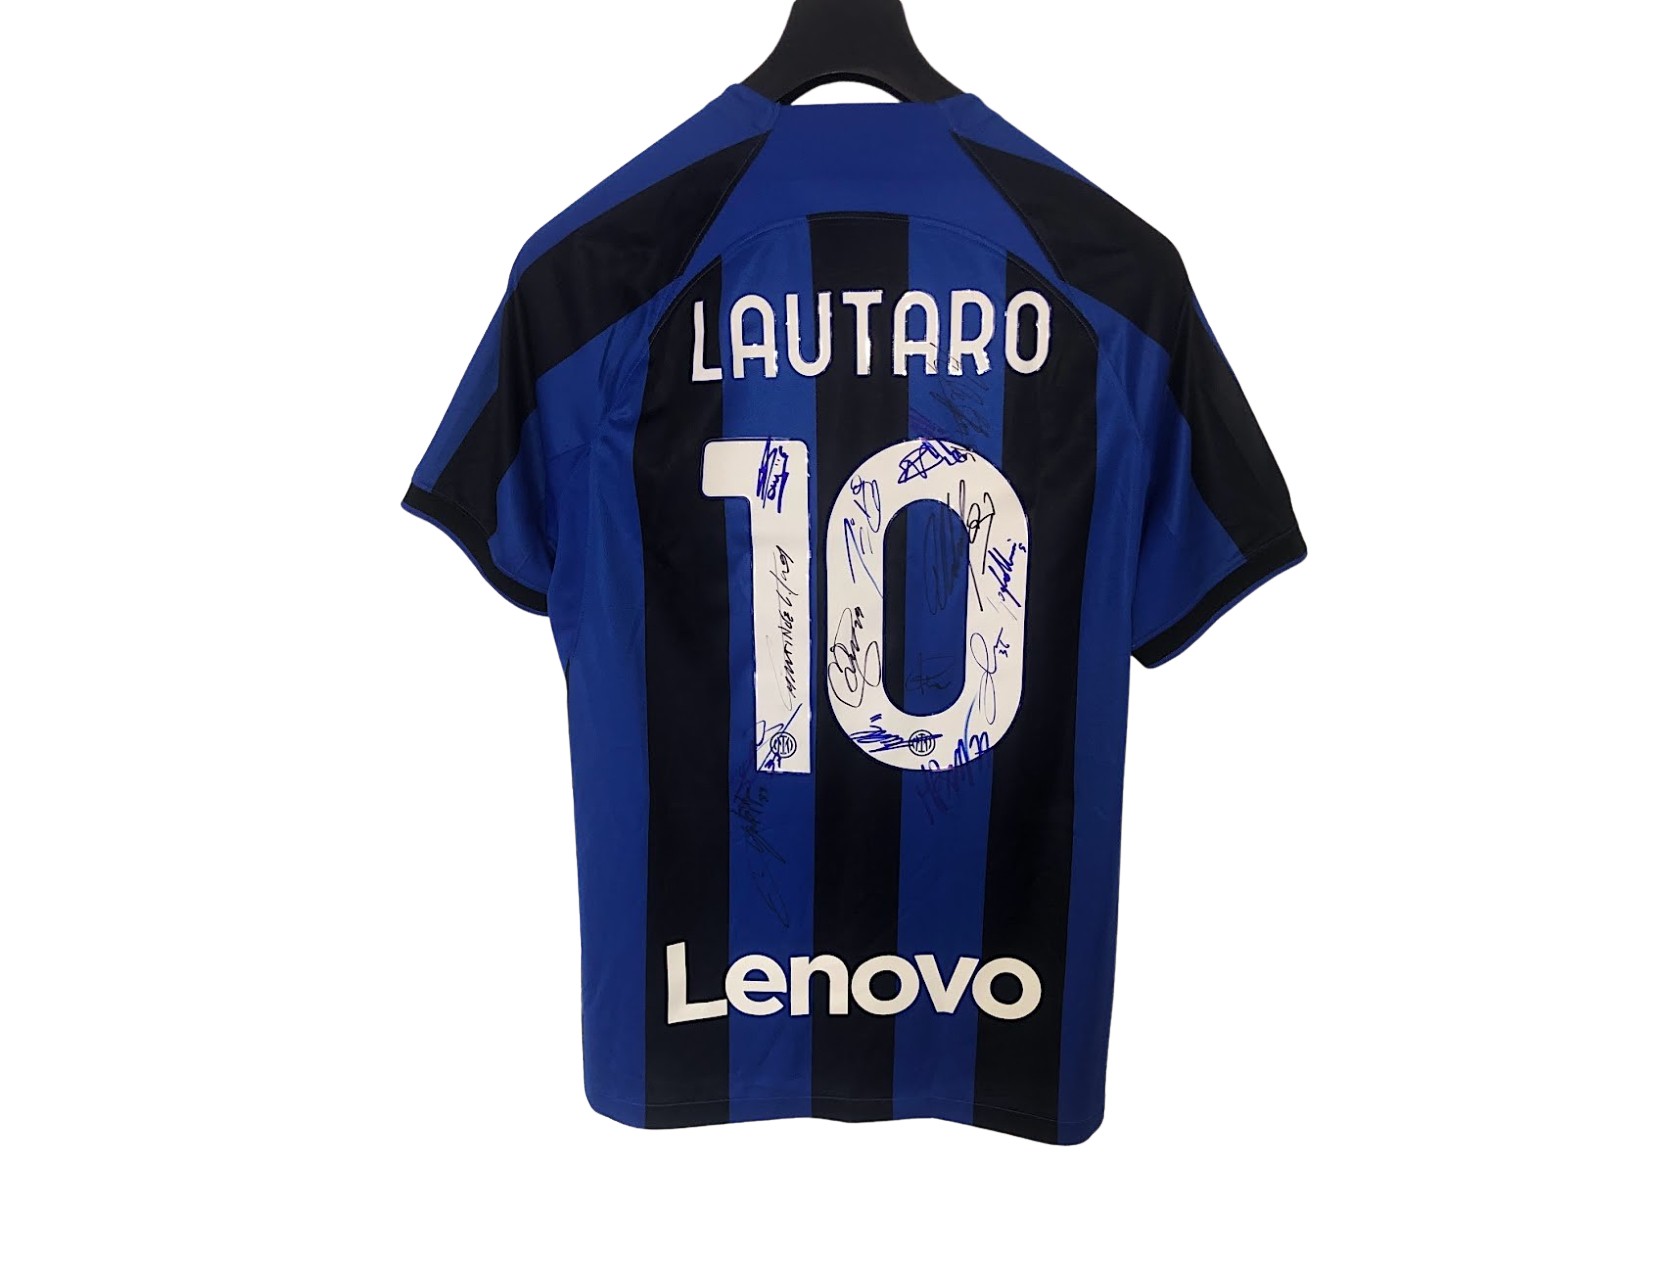 Maglia ufficiale Lautaro Inter, 2022/23 - Autografata dalla rosa -  CharityStars